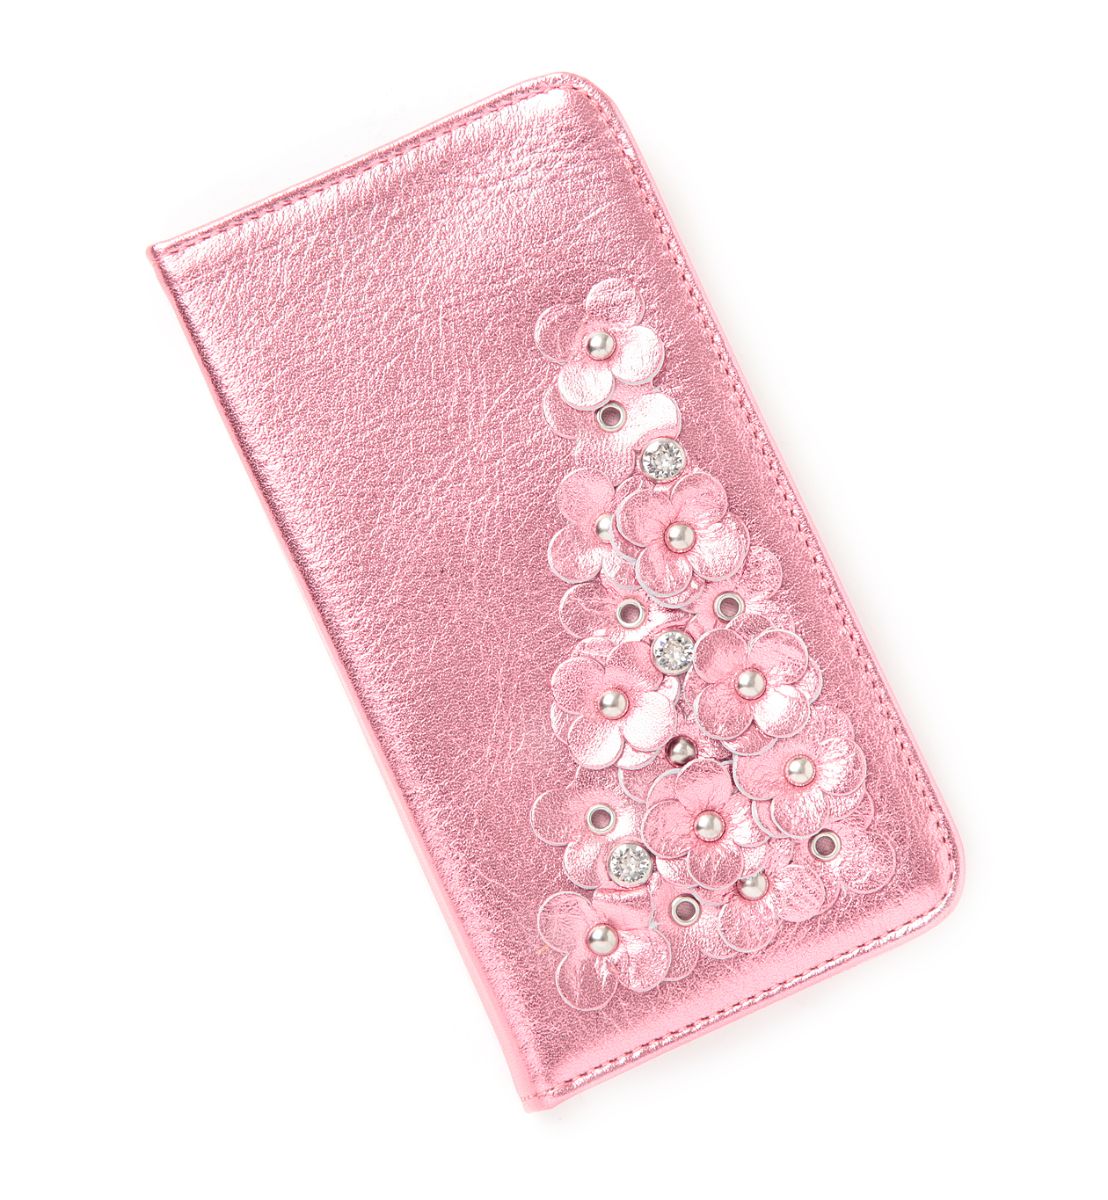 【ANTEPRIMA公式】 アンテプリマ マッツェット小物 iPhone 7 ケース ピンク EANP10612 財布 スマートフォン タブレットケース レディース ブランド ギフト プレゼント